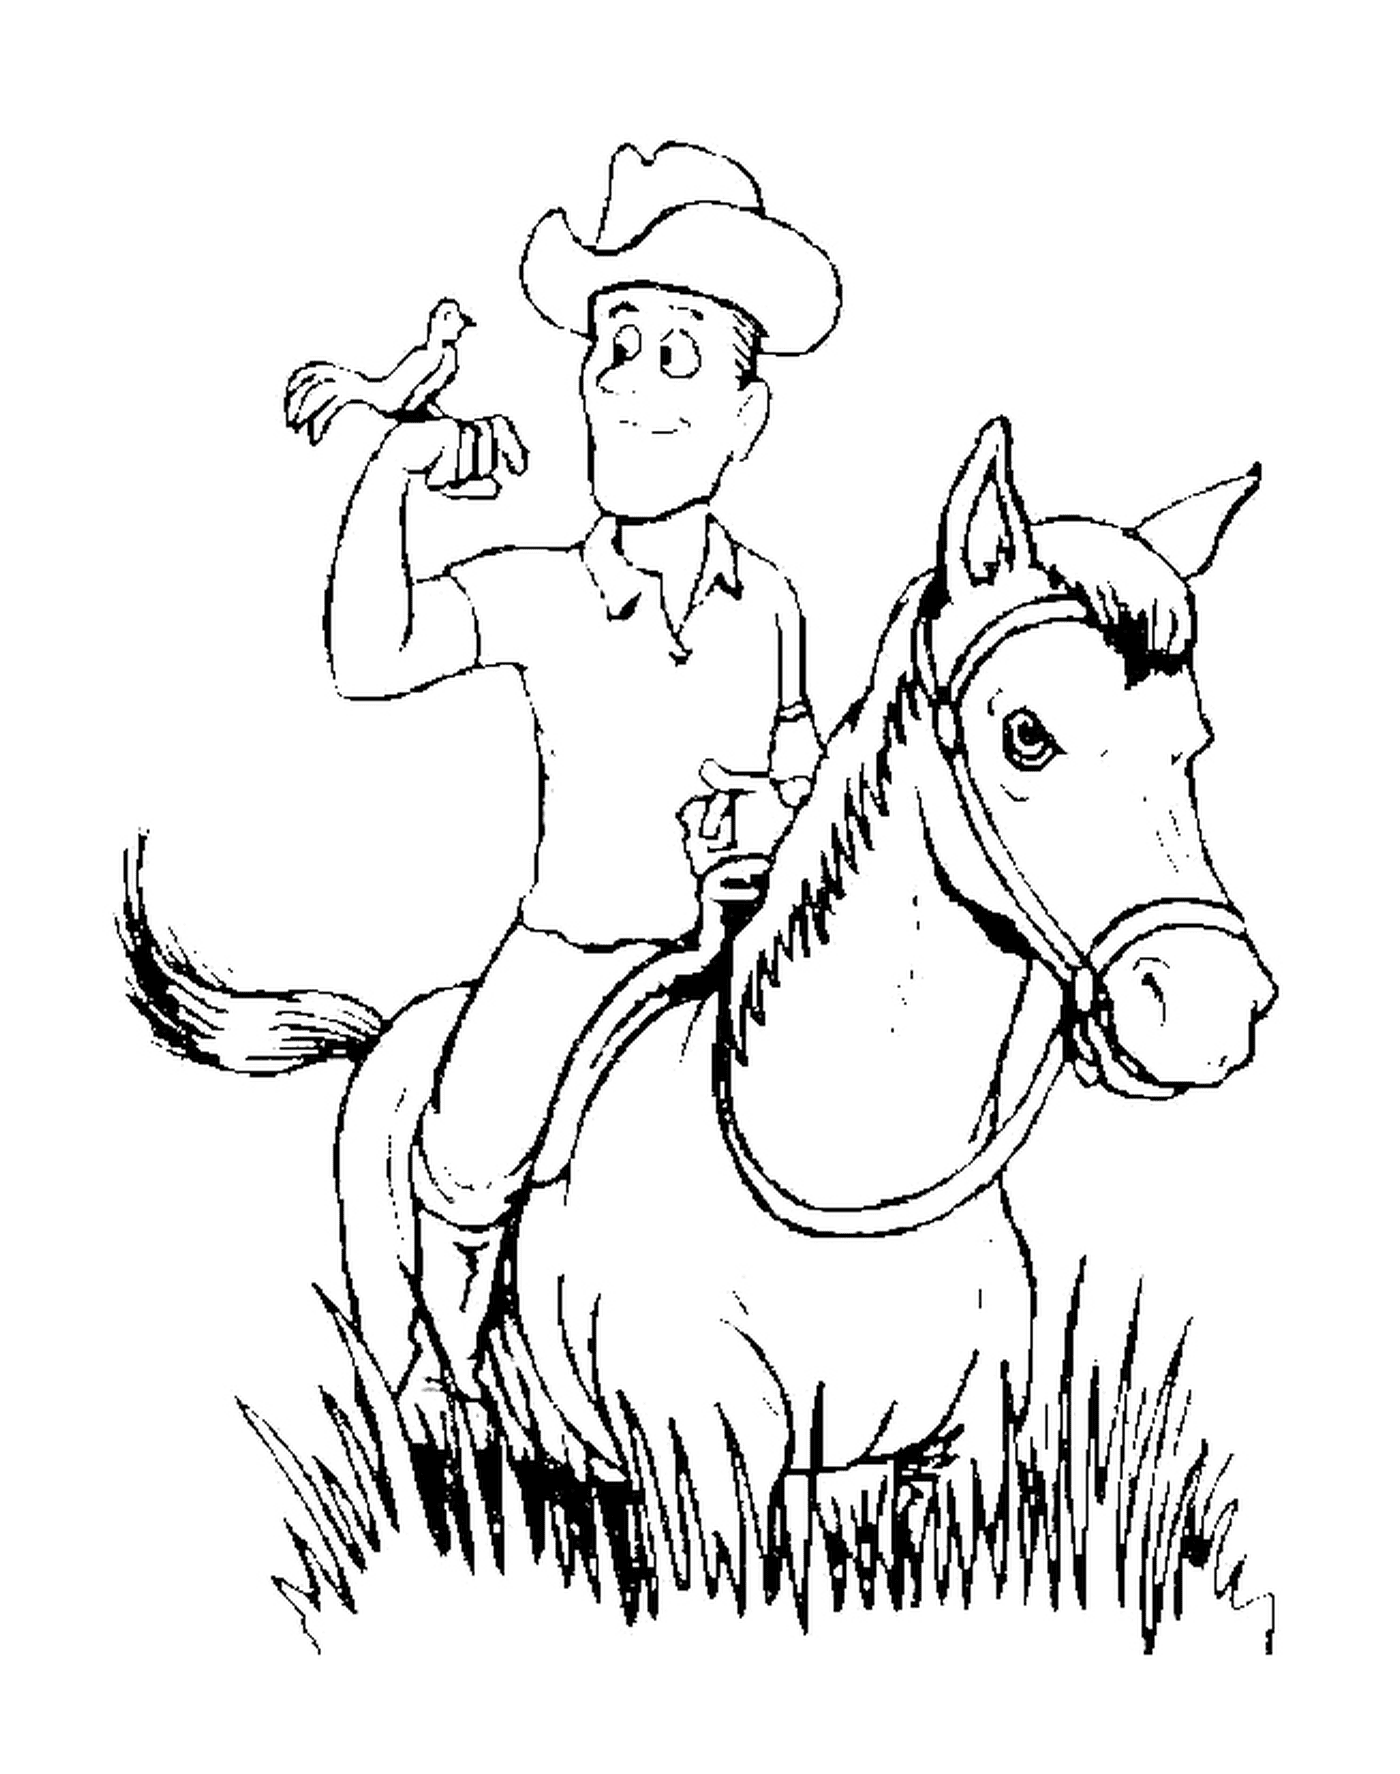   Cowboy chevauchant avec un compagnon inattendu 